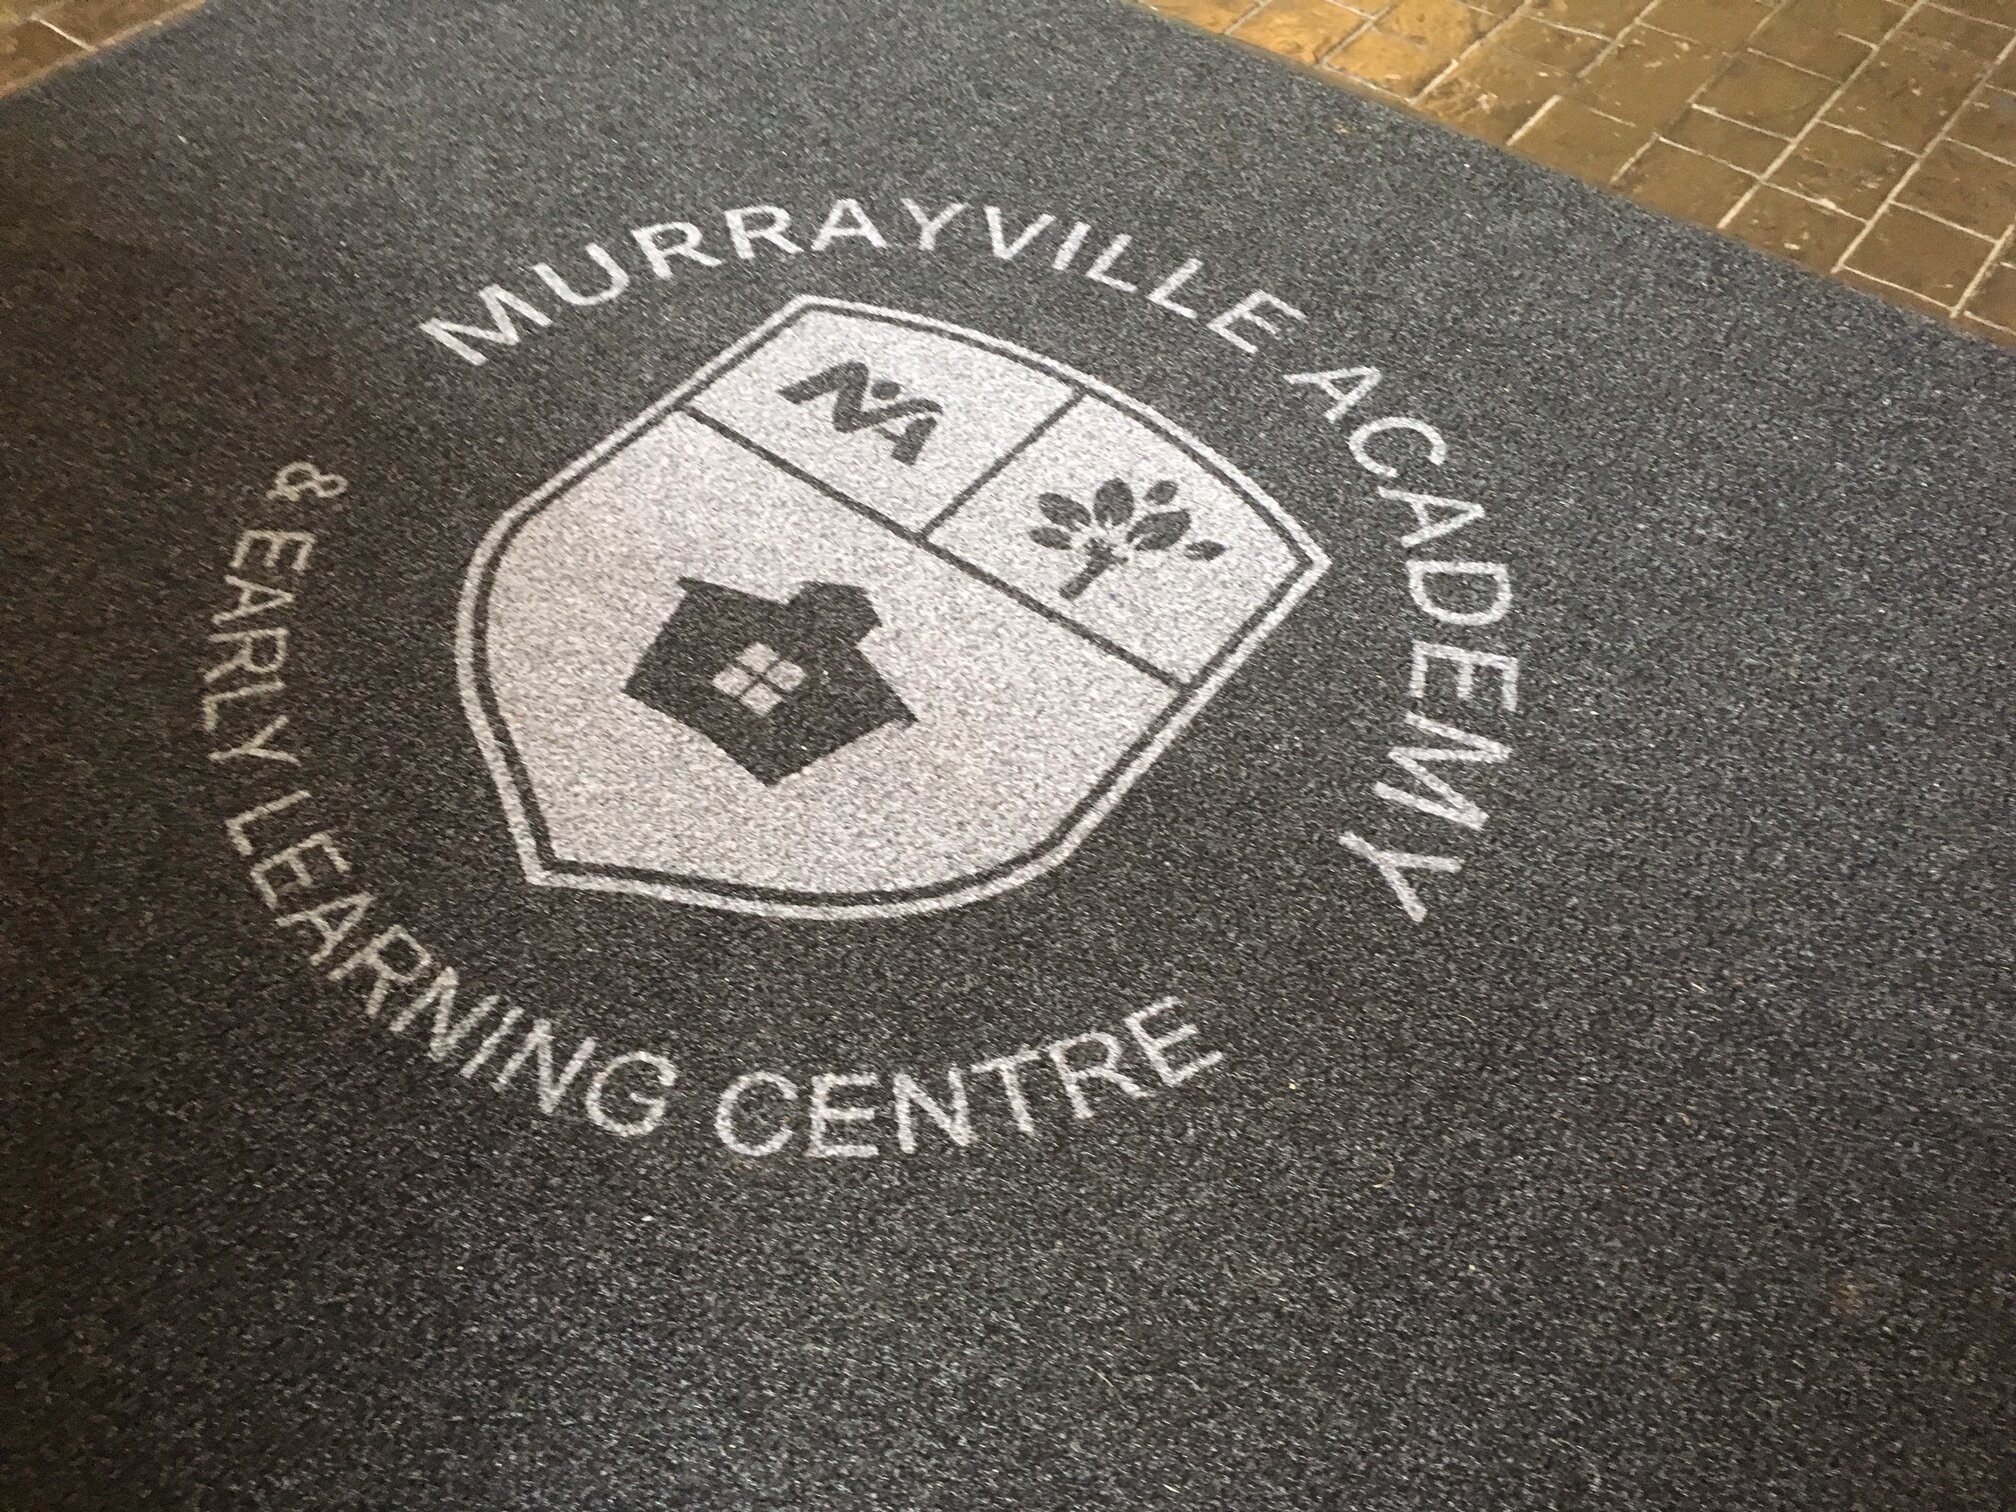 Murrayville Academy 1.JPG